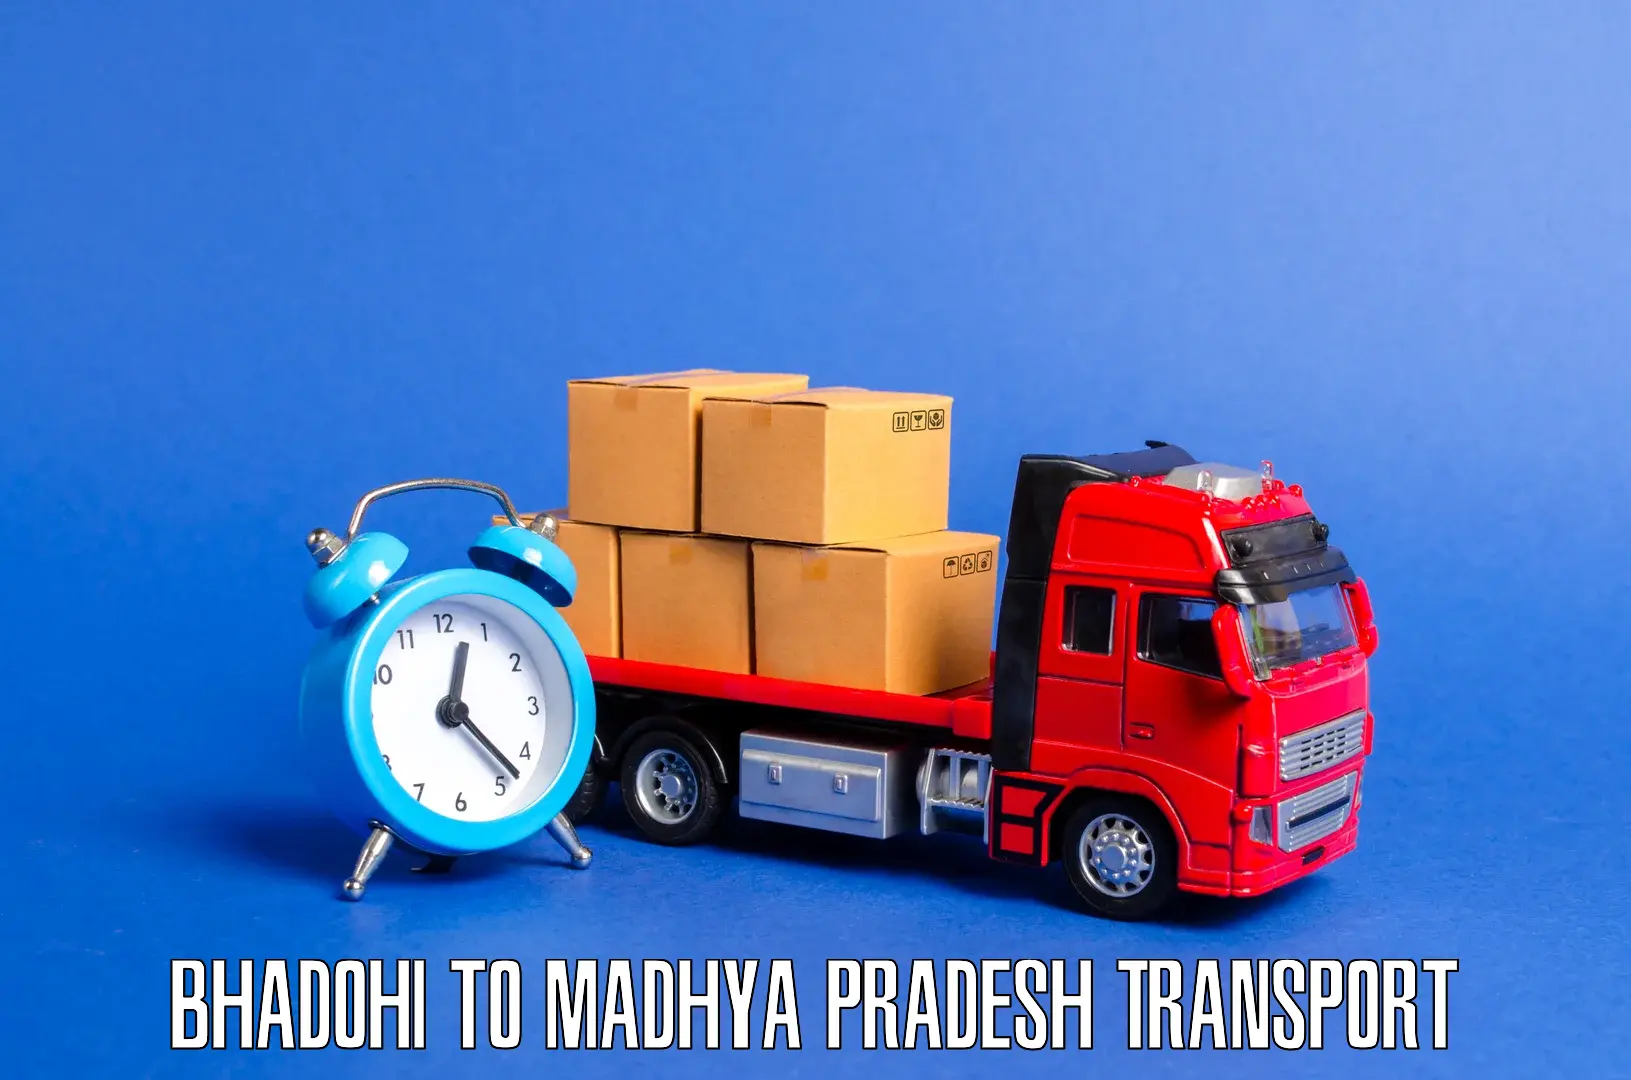 Furniture transport service Bhadohi to Kukshi